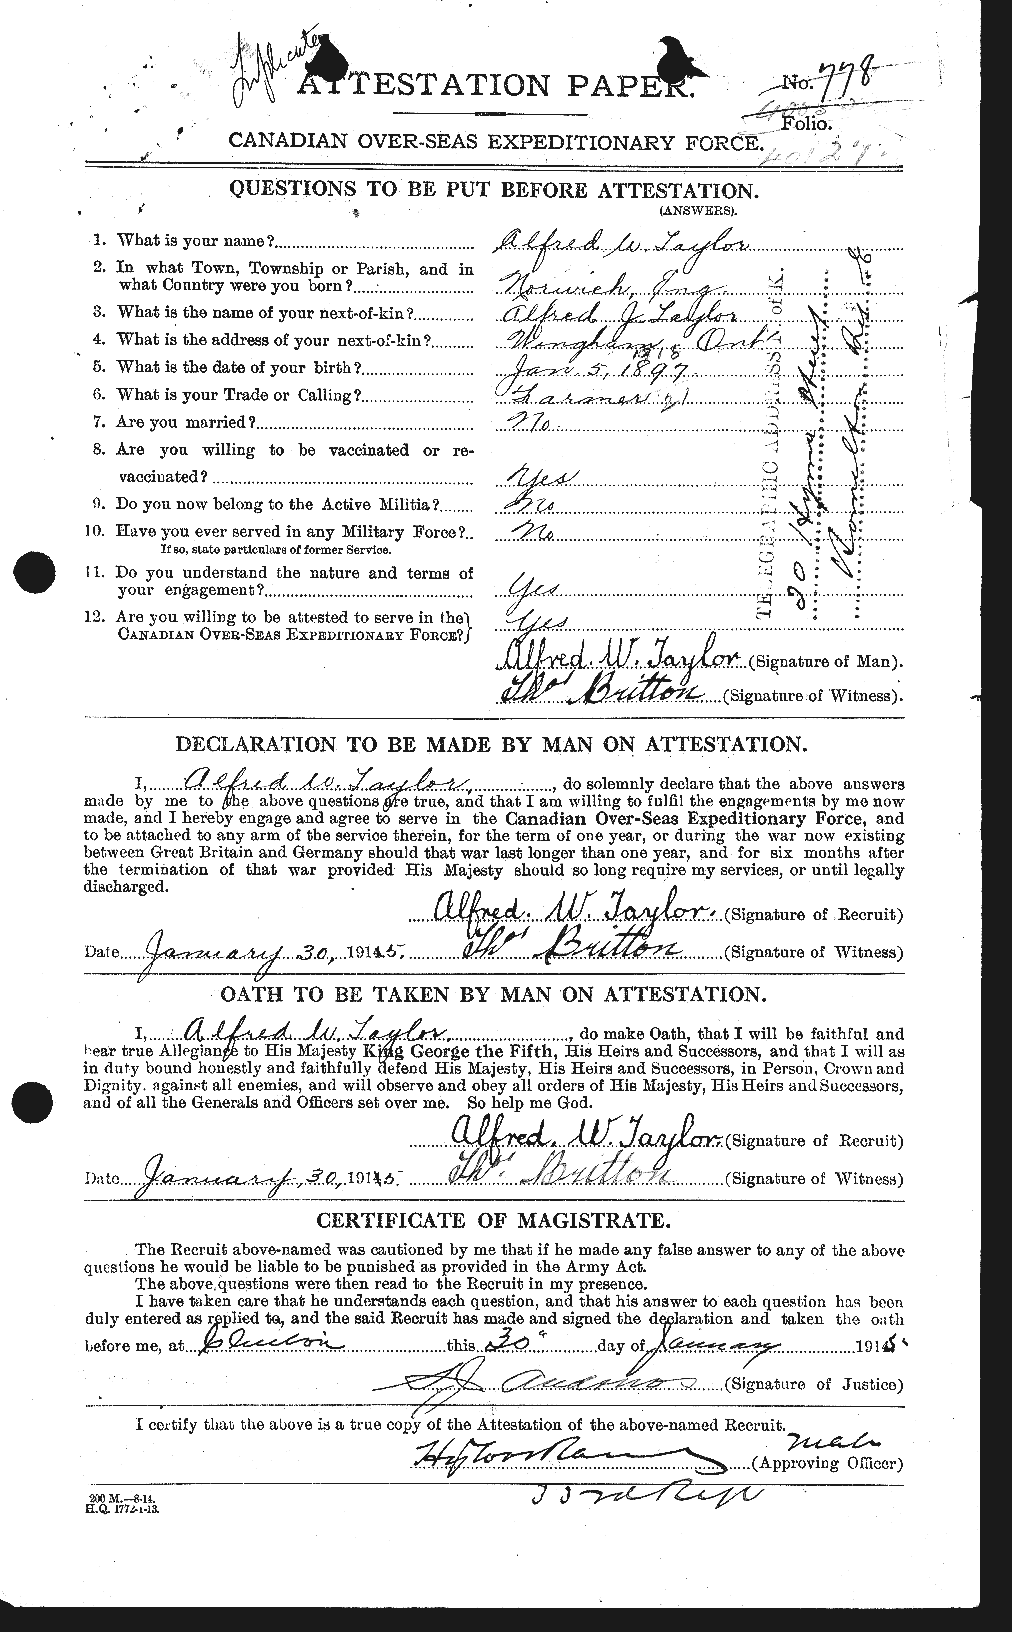 Dossiers du Personnel de la Première Guerre mondiale - CEC 626197a